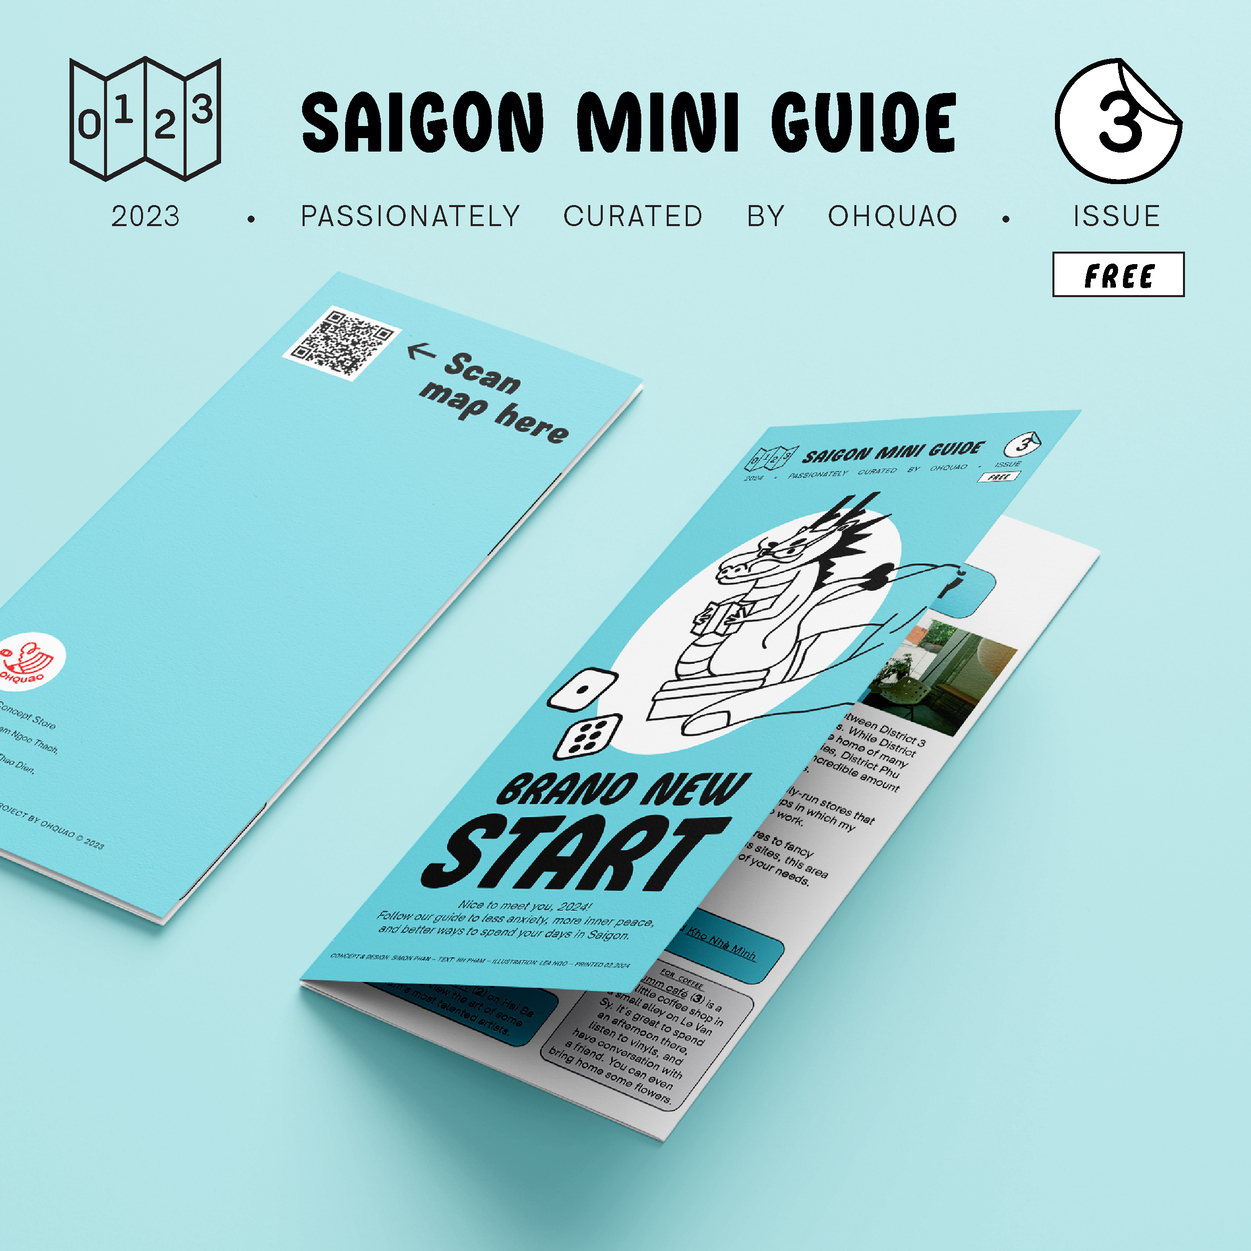 [VNM] Saigon Mini Guide Issue 3: Brand New Start